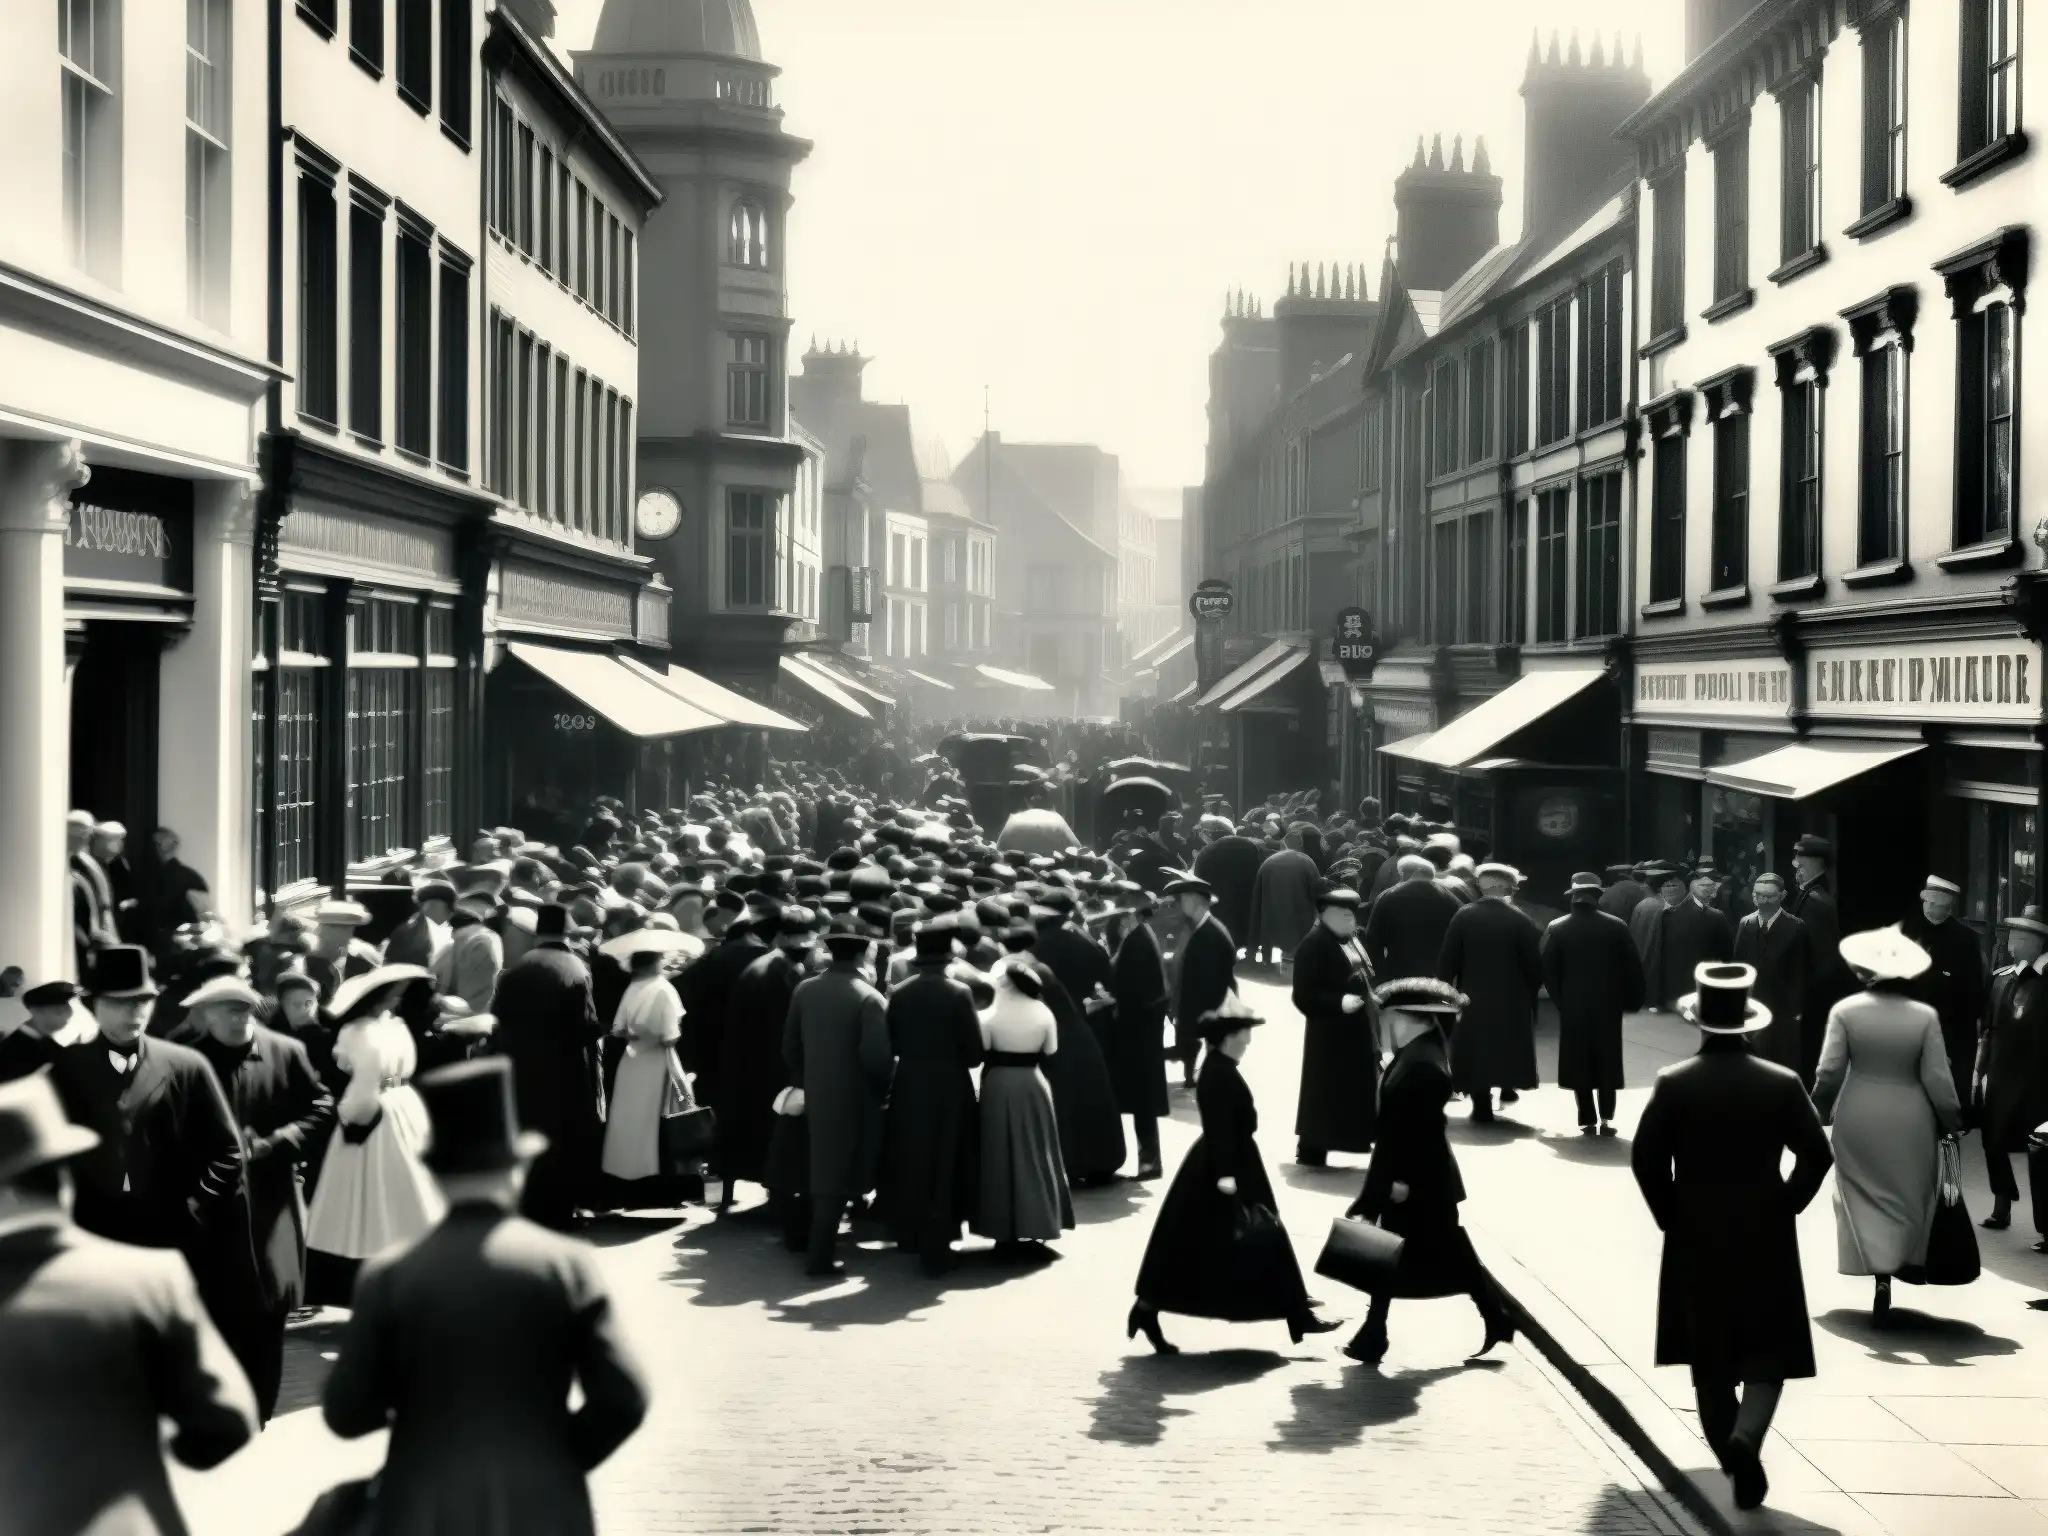 Una fotografía en blanco y negro de una concurrida calle de la ciudad de Cardiff, Gales, a finales de 1800